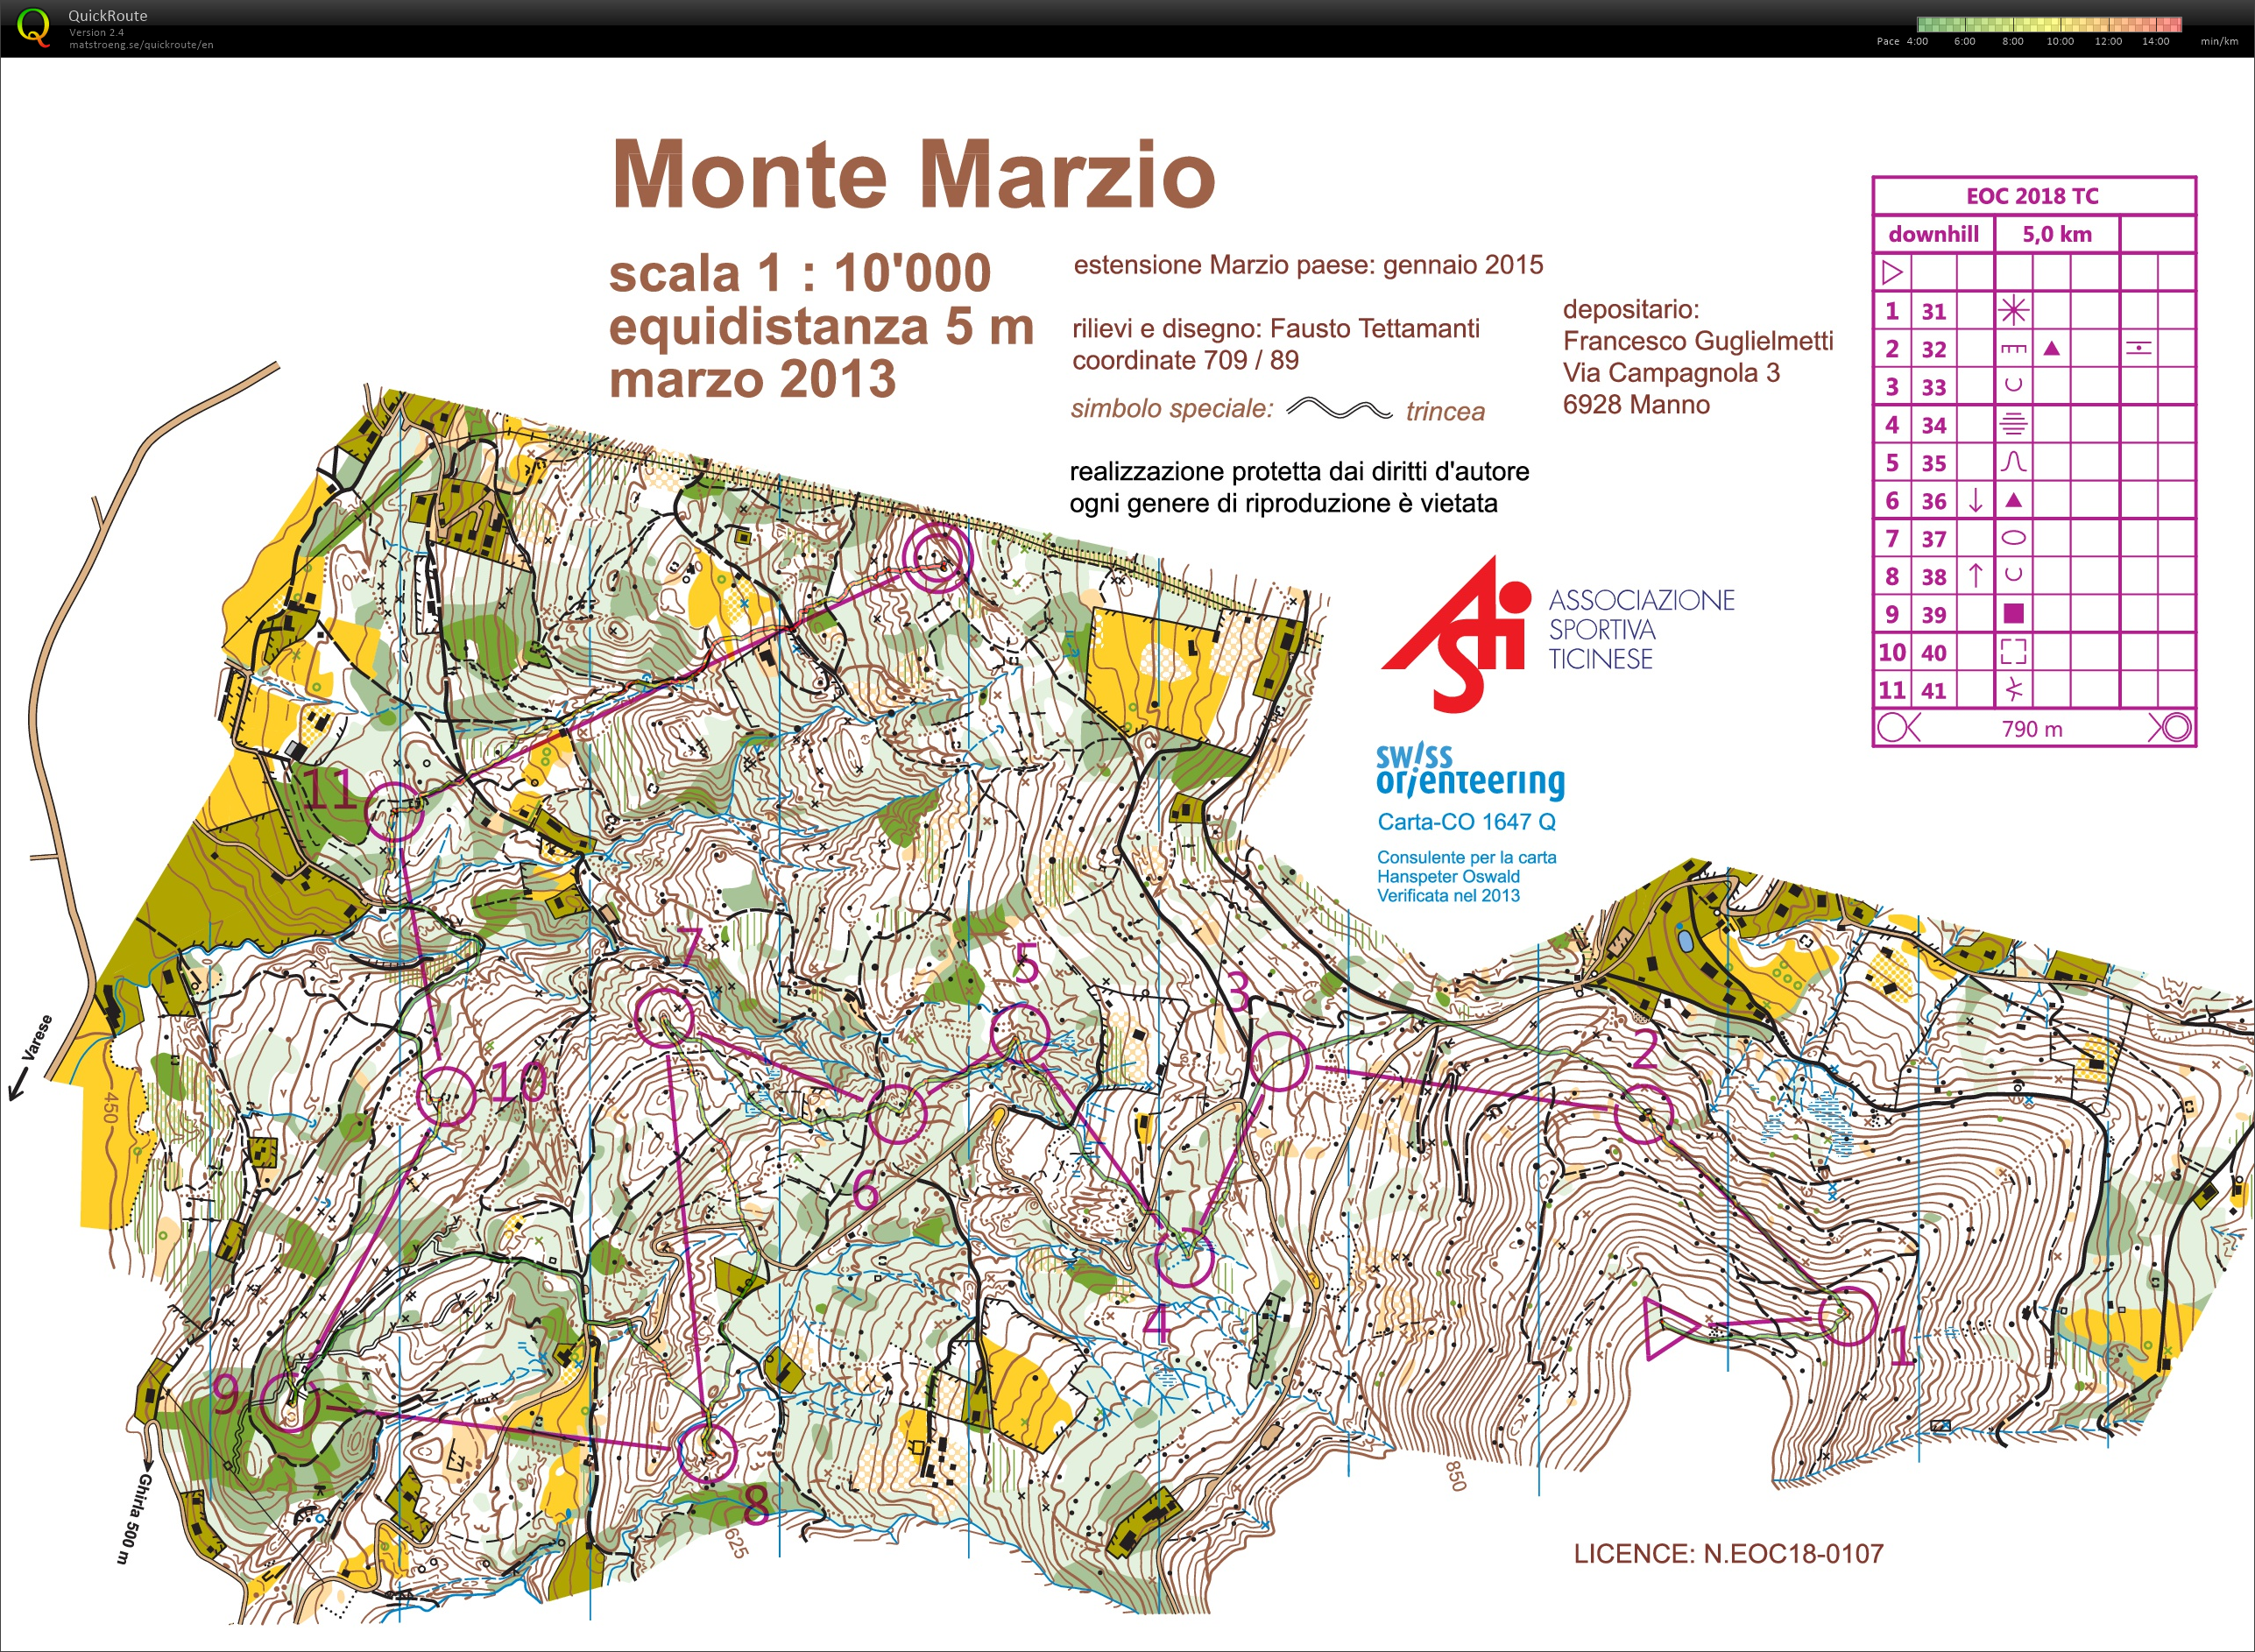 Monte Marzio Downhill EOC TL #2 (24/03/2018)